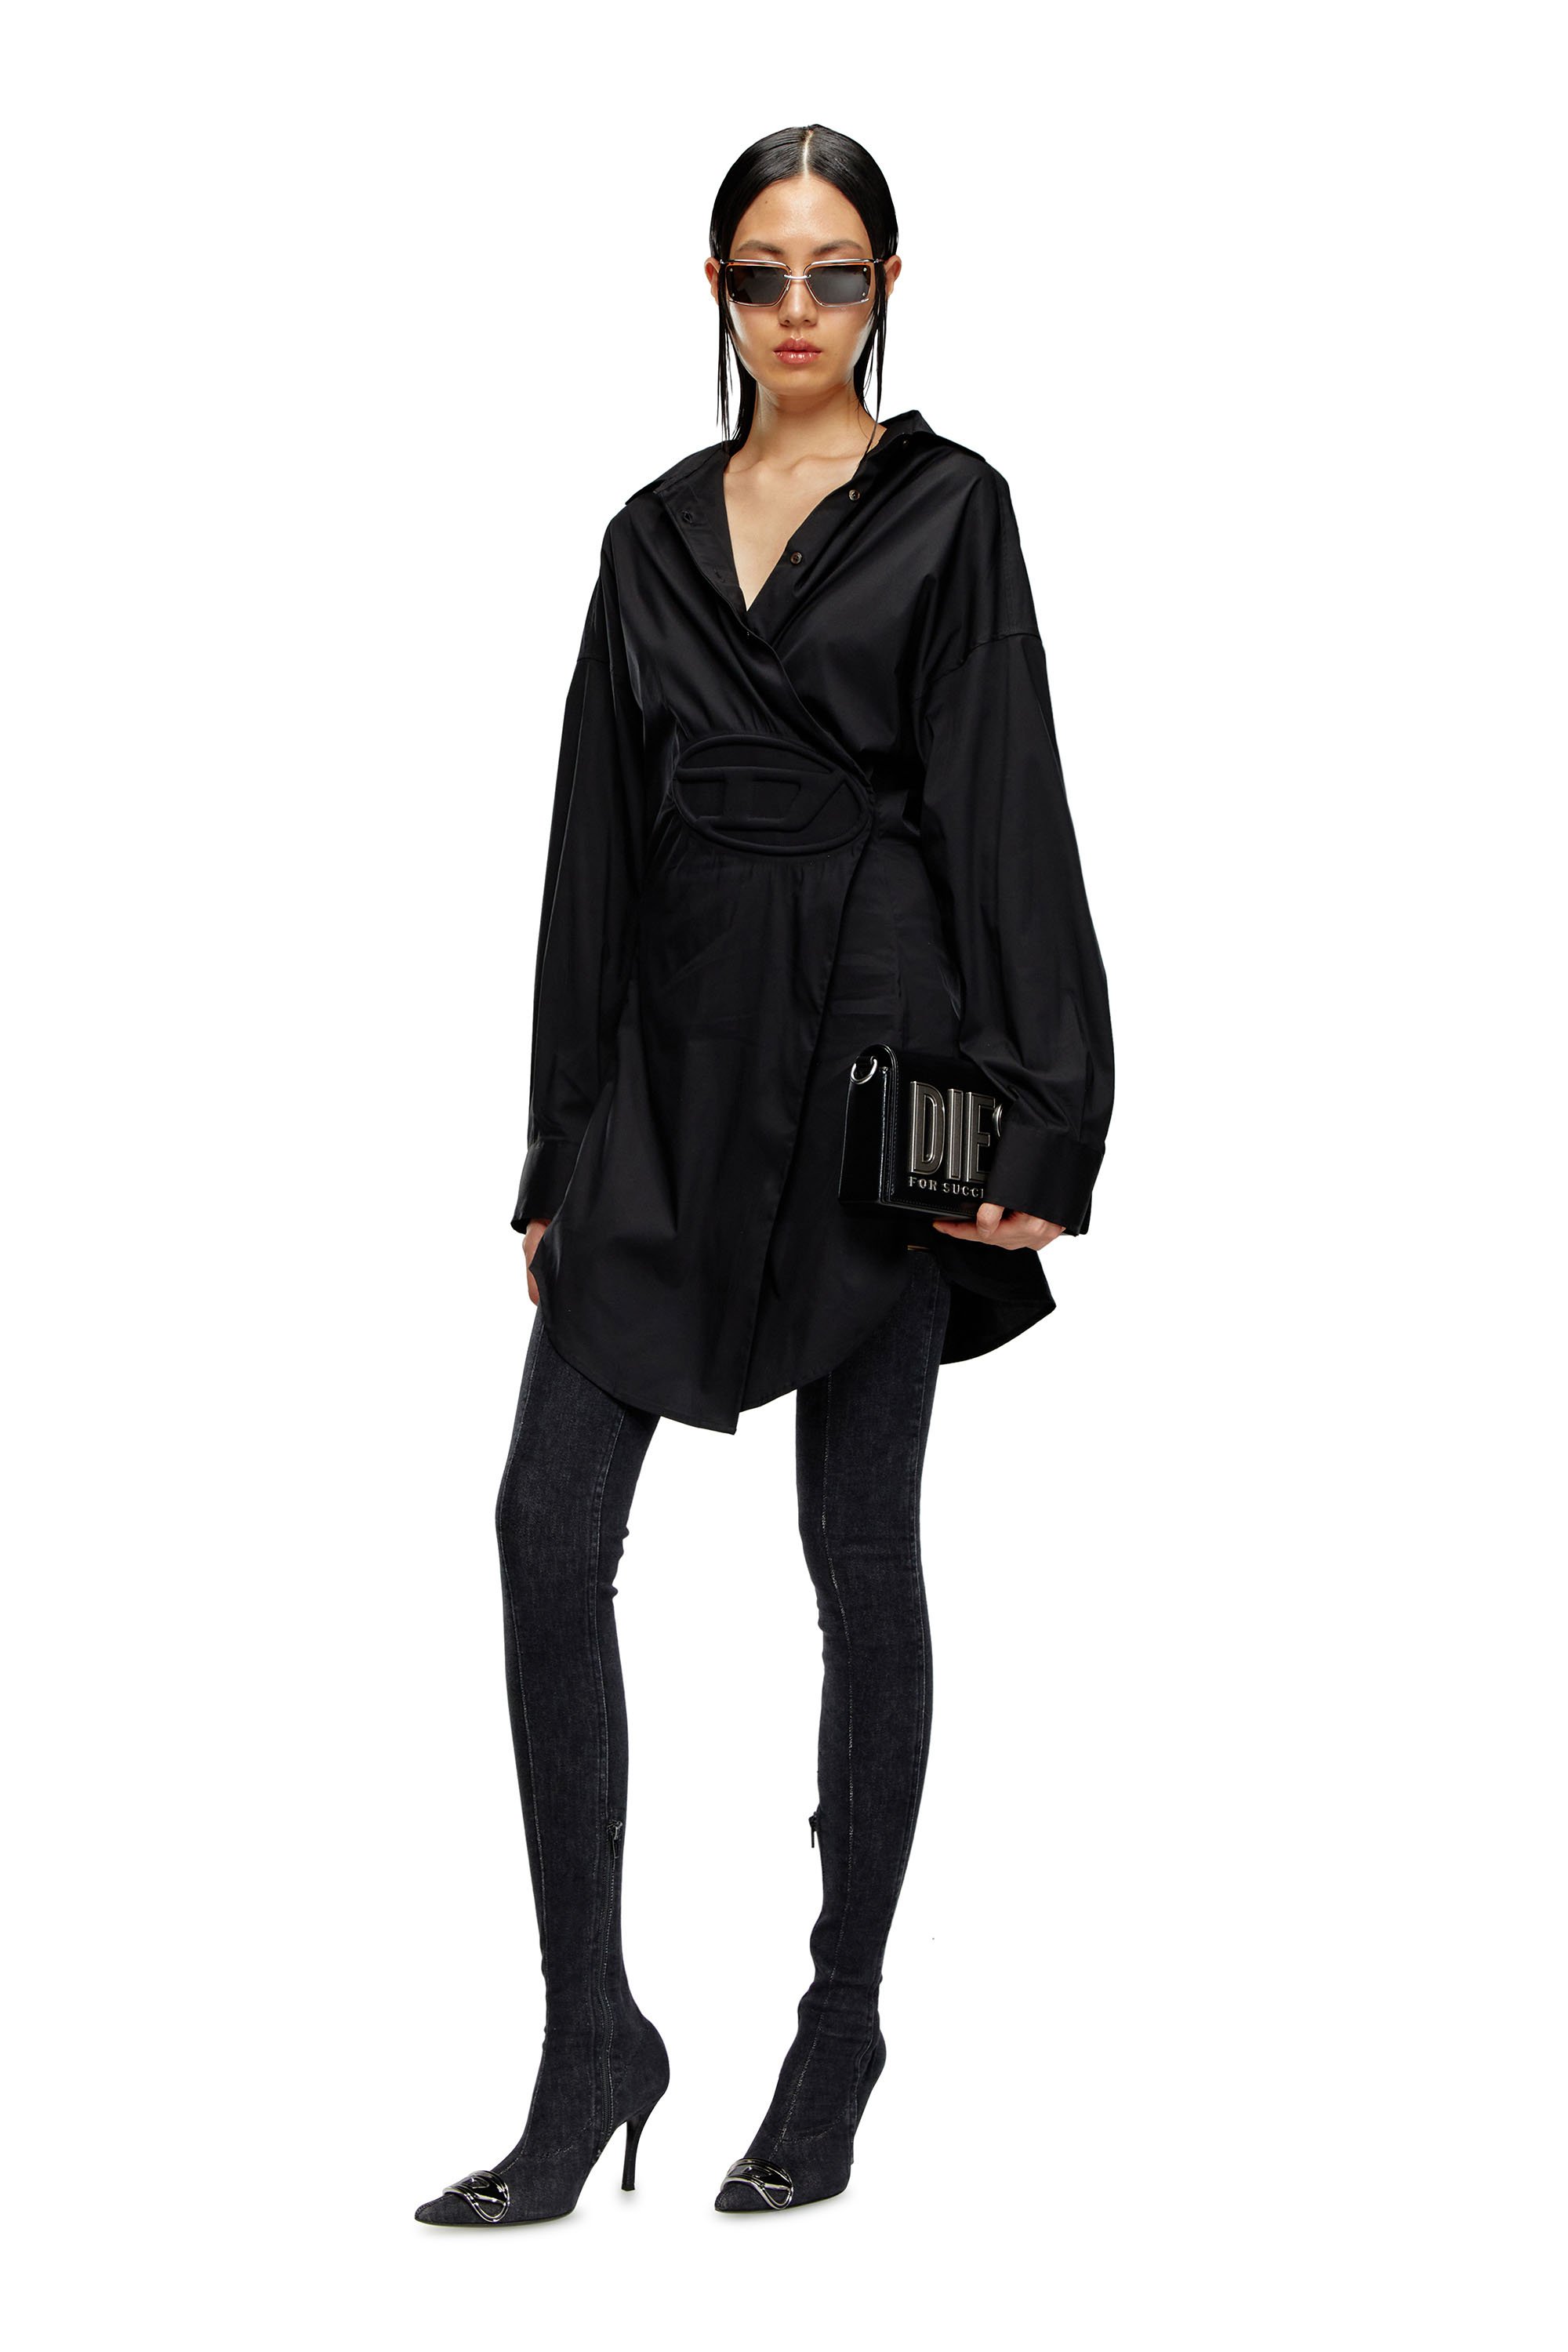 Diesel - D-SIZEN-N1, Woman Short shirt dress in stretch poplin in Black - Image 1